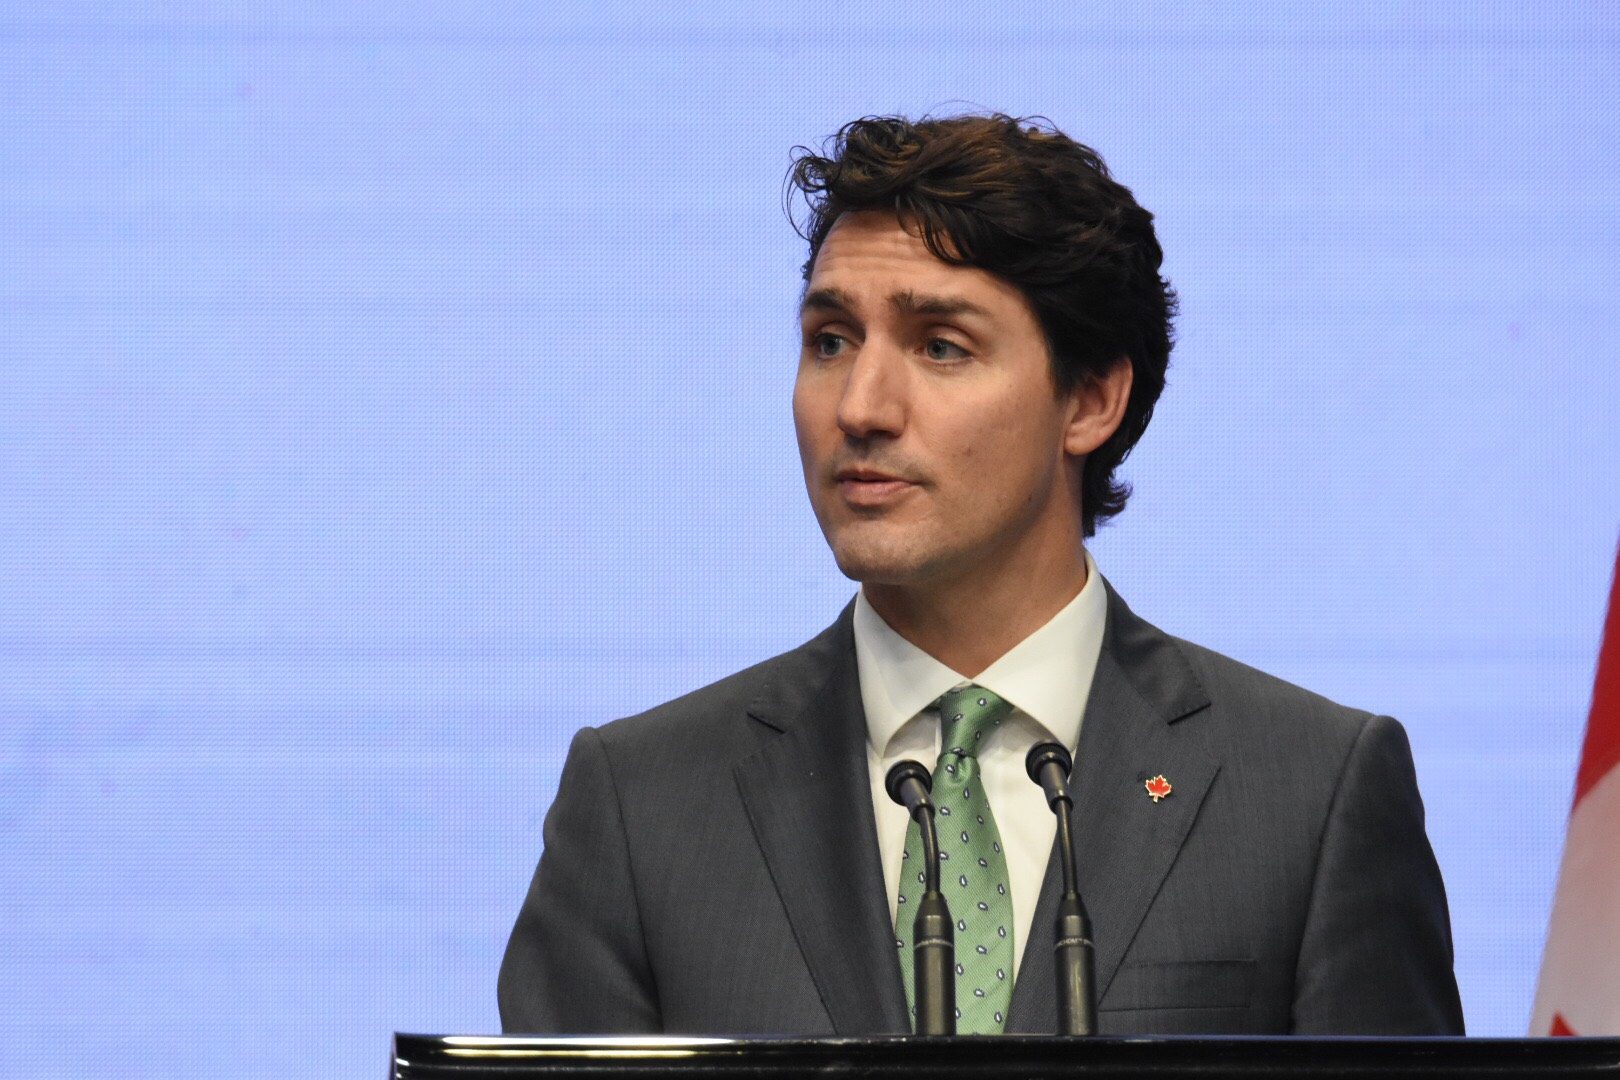 Justin Trudeau defends himself against groping allegation